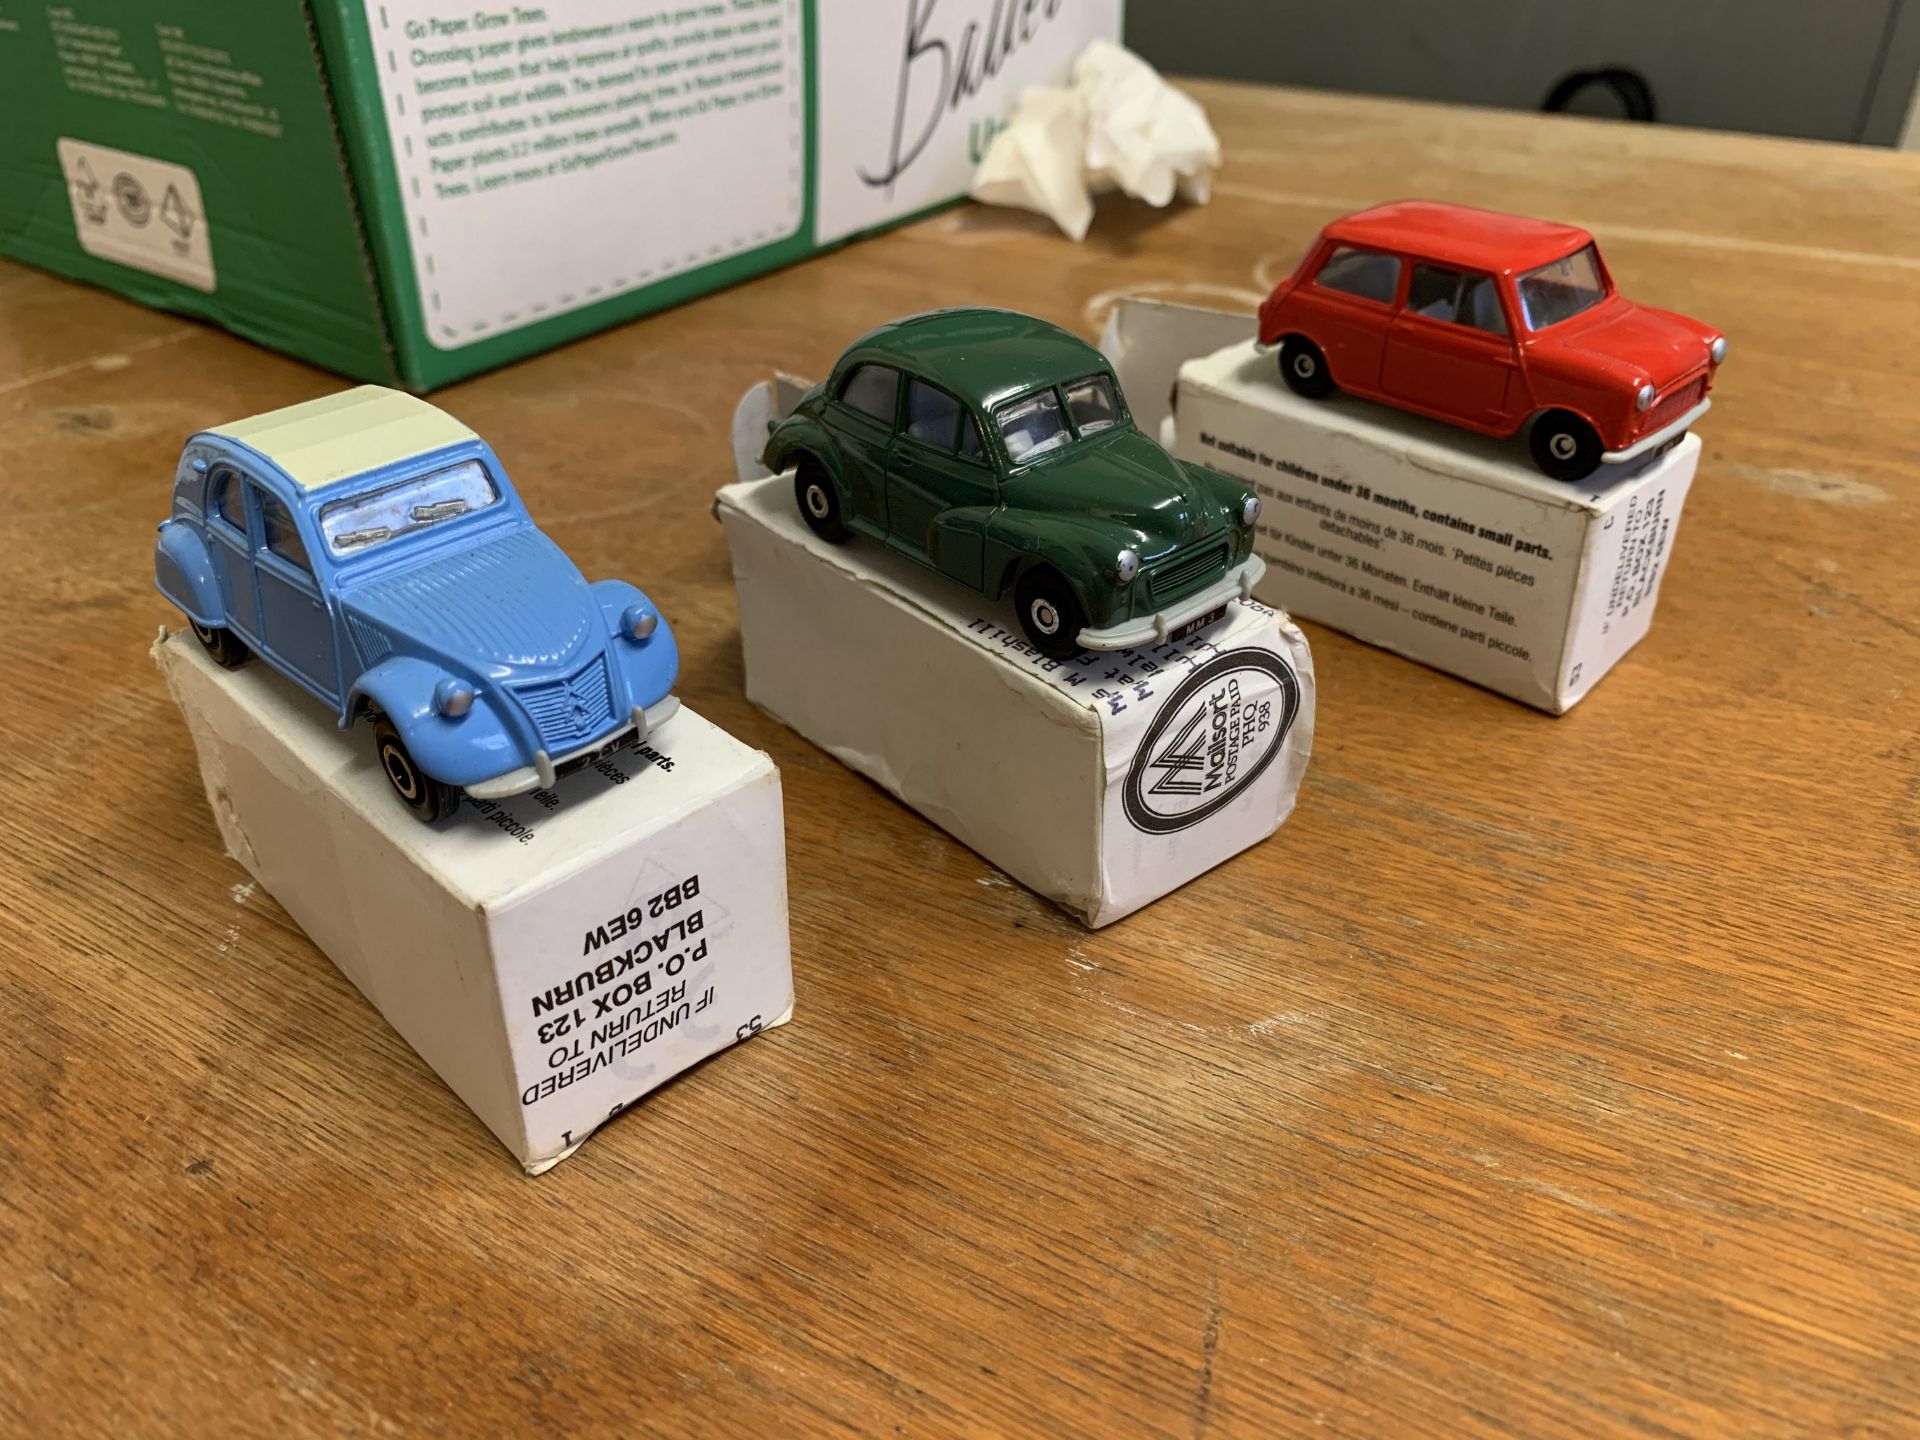 3 Corgi boxed model cars